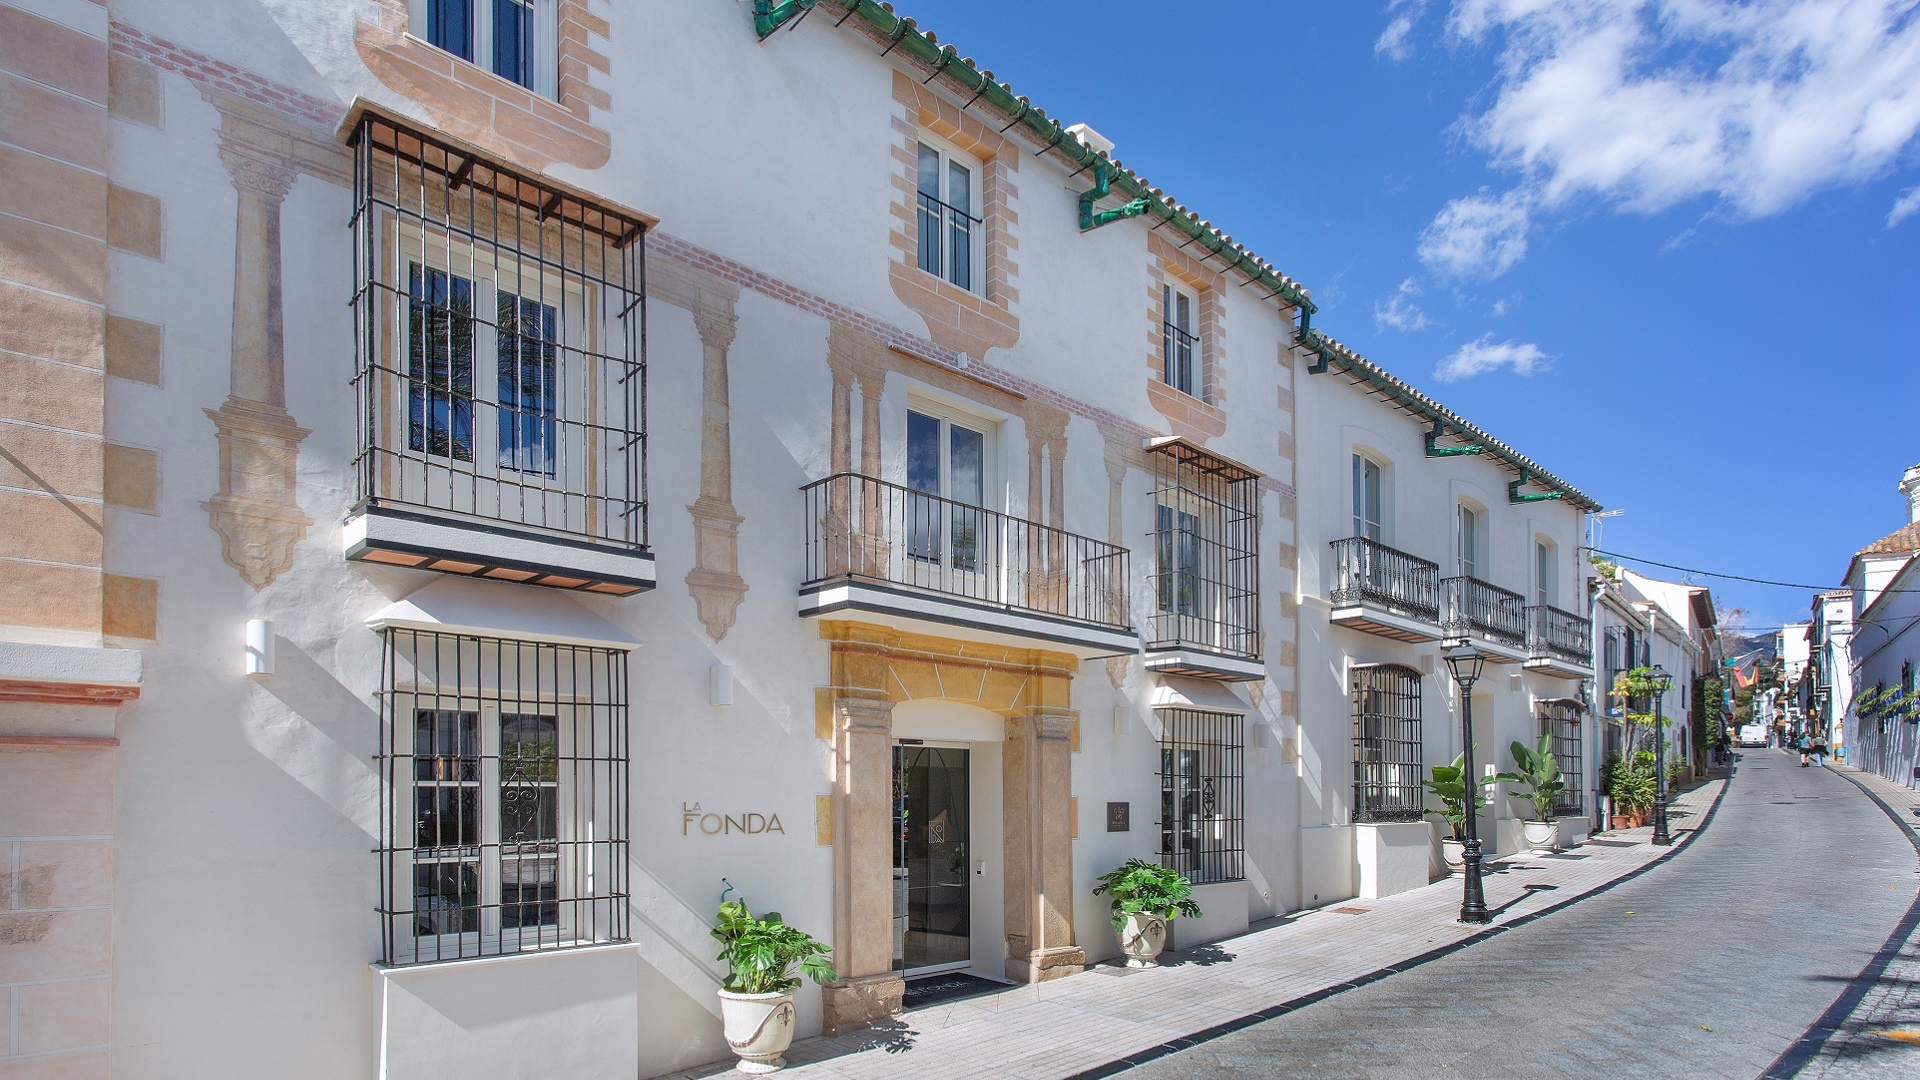 La Fonda Heritage Hotel Marbella, único miembro de Relais & Châteaux en Andalucía